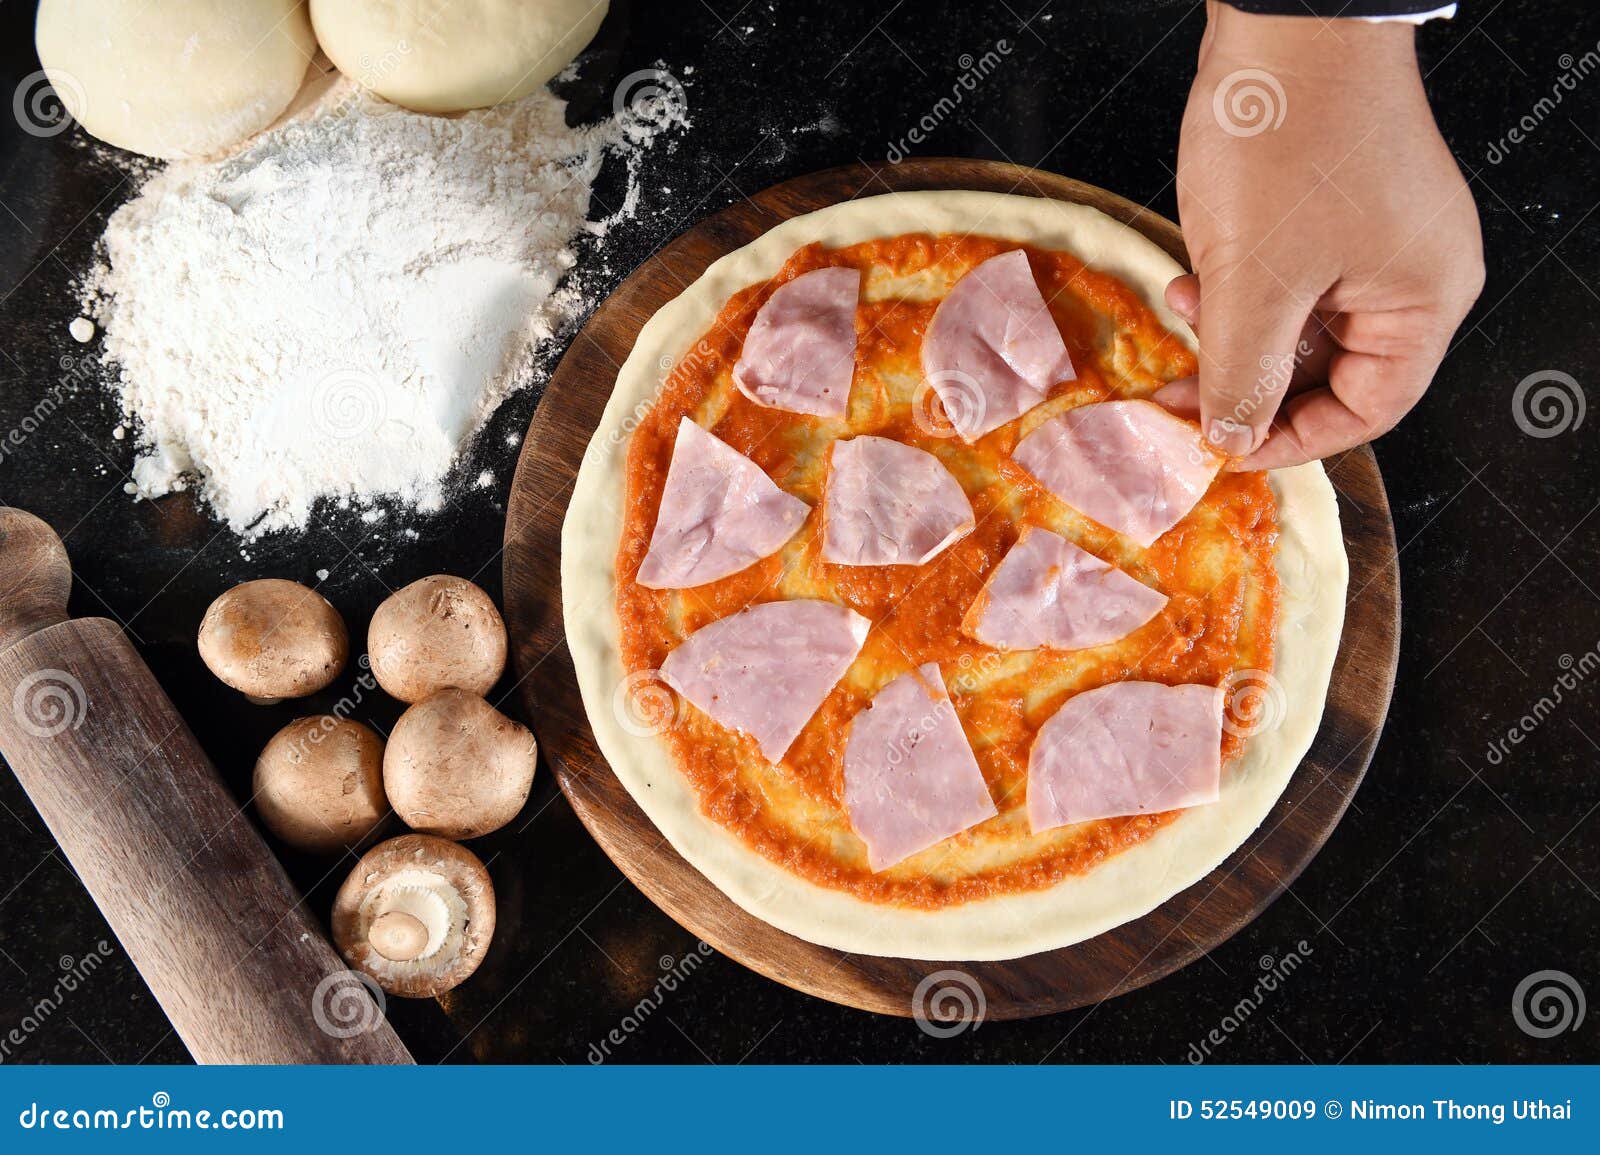 разваливается начинка у пиццы фото 32